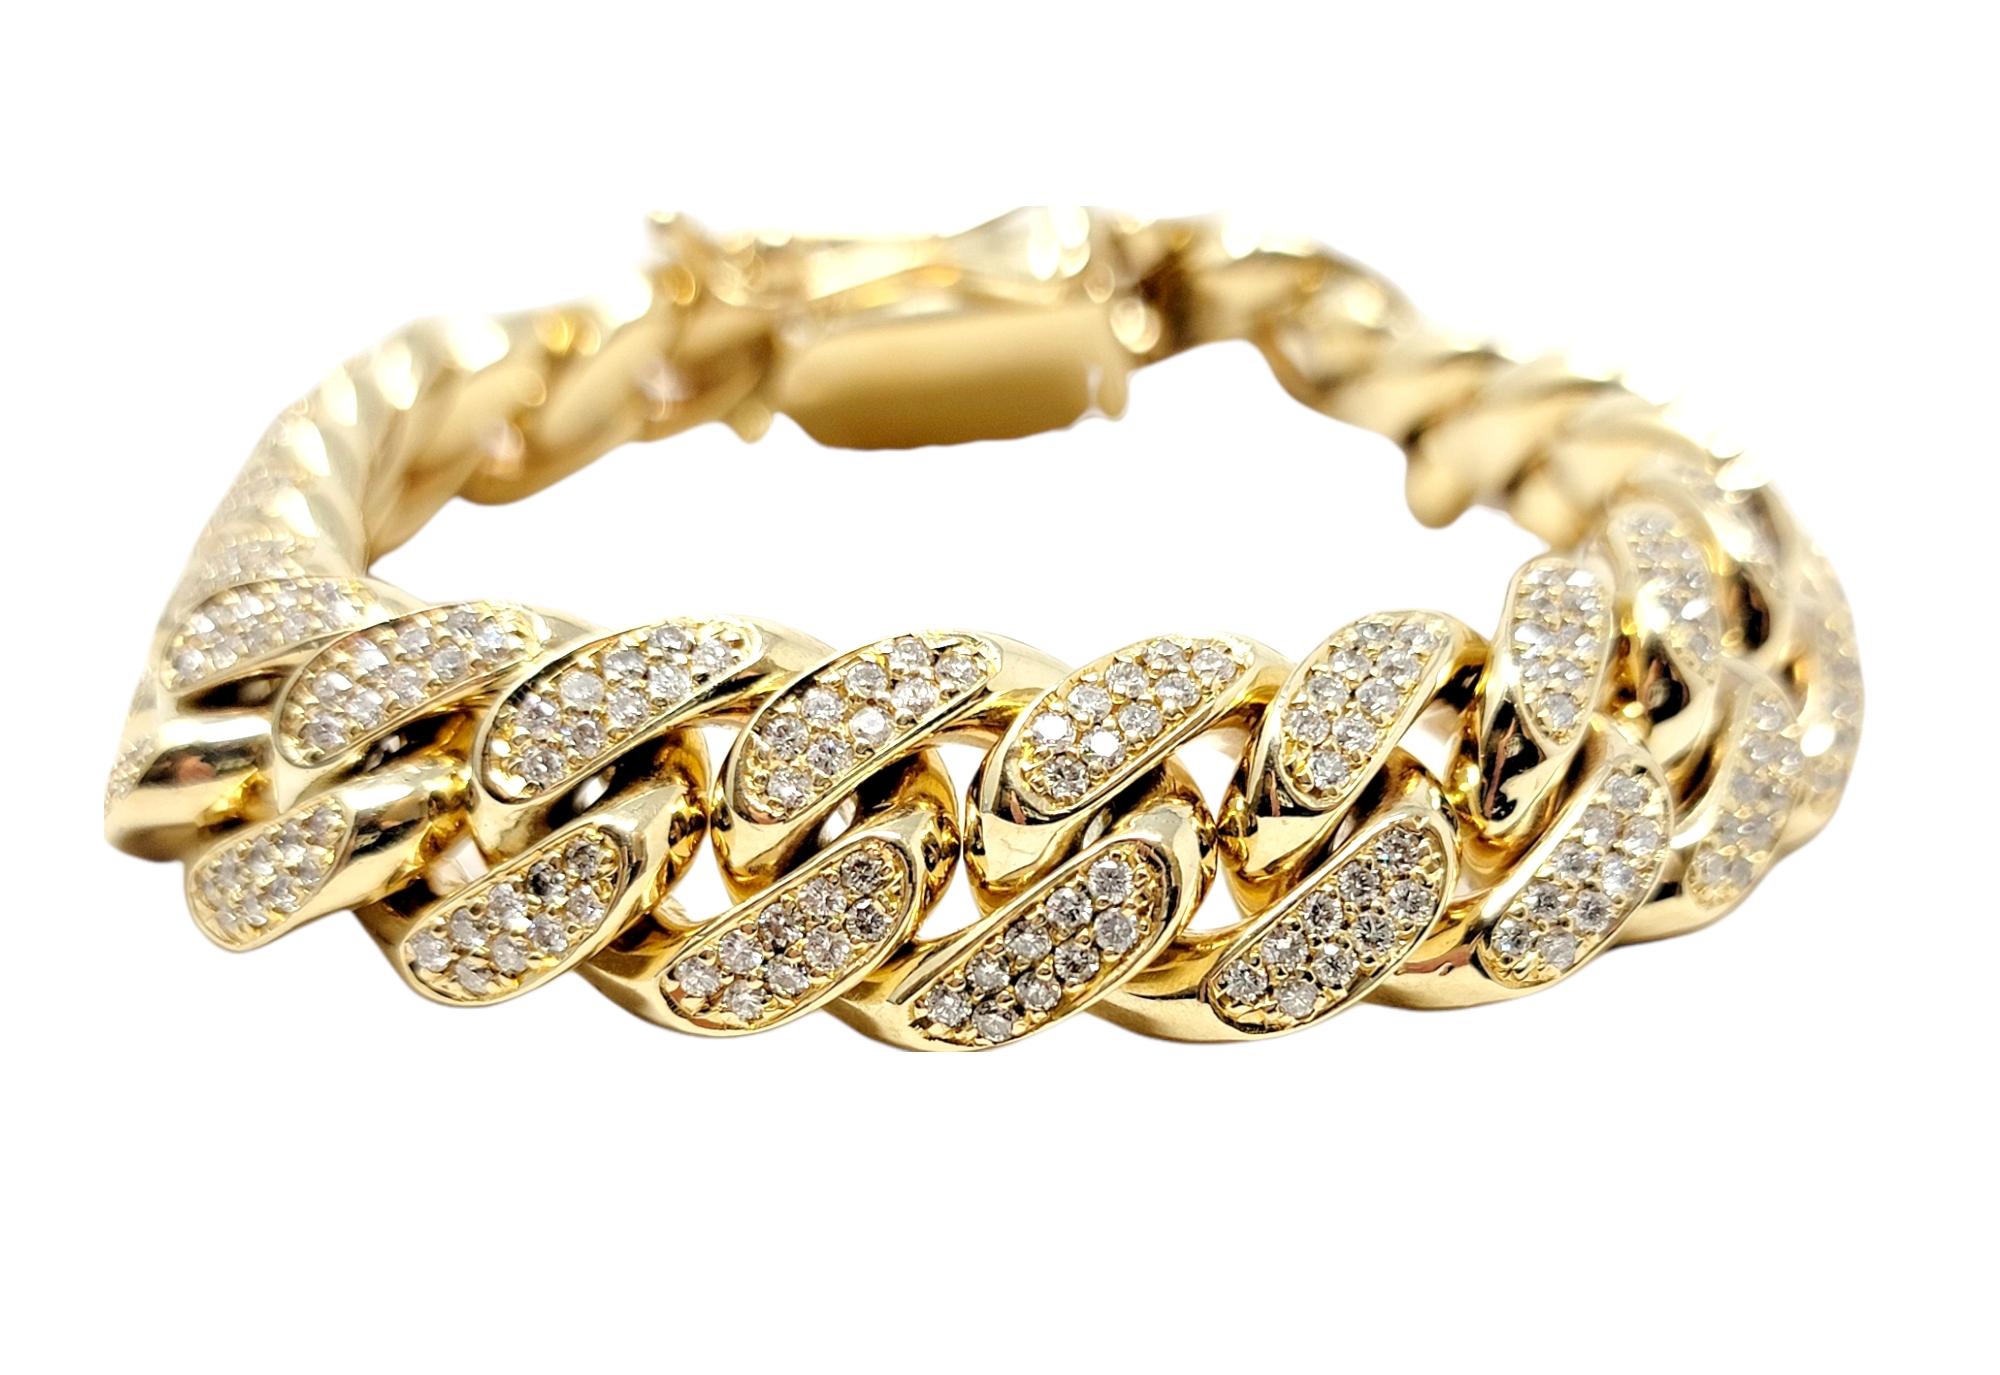 Bracelet à maillons en diamant pour homme, audacieux et lourd. Cette pièce incroyablement séduisante présente un motif de maillons cubains en or jaune 10 carats poli et répétitif. Les maillons en or massif sont de forme massive et se détachent